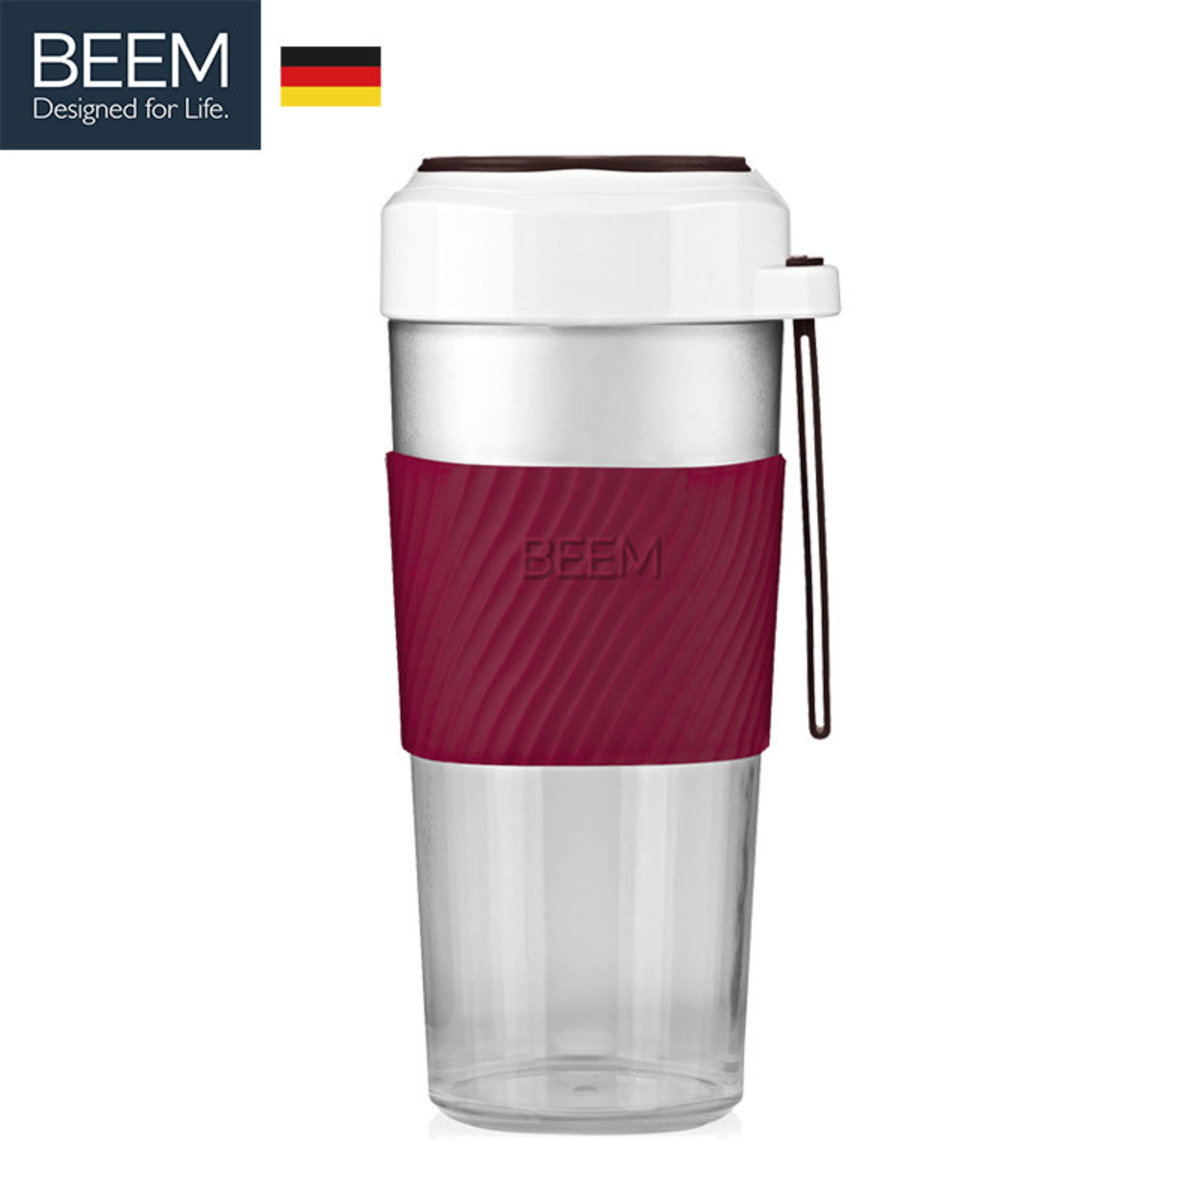 BEEM 充電便攜式榨汁杯 (紅色)